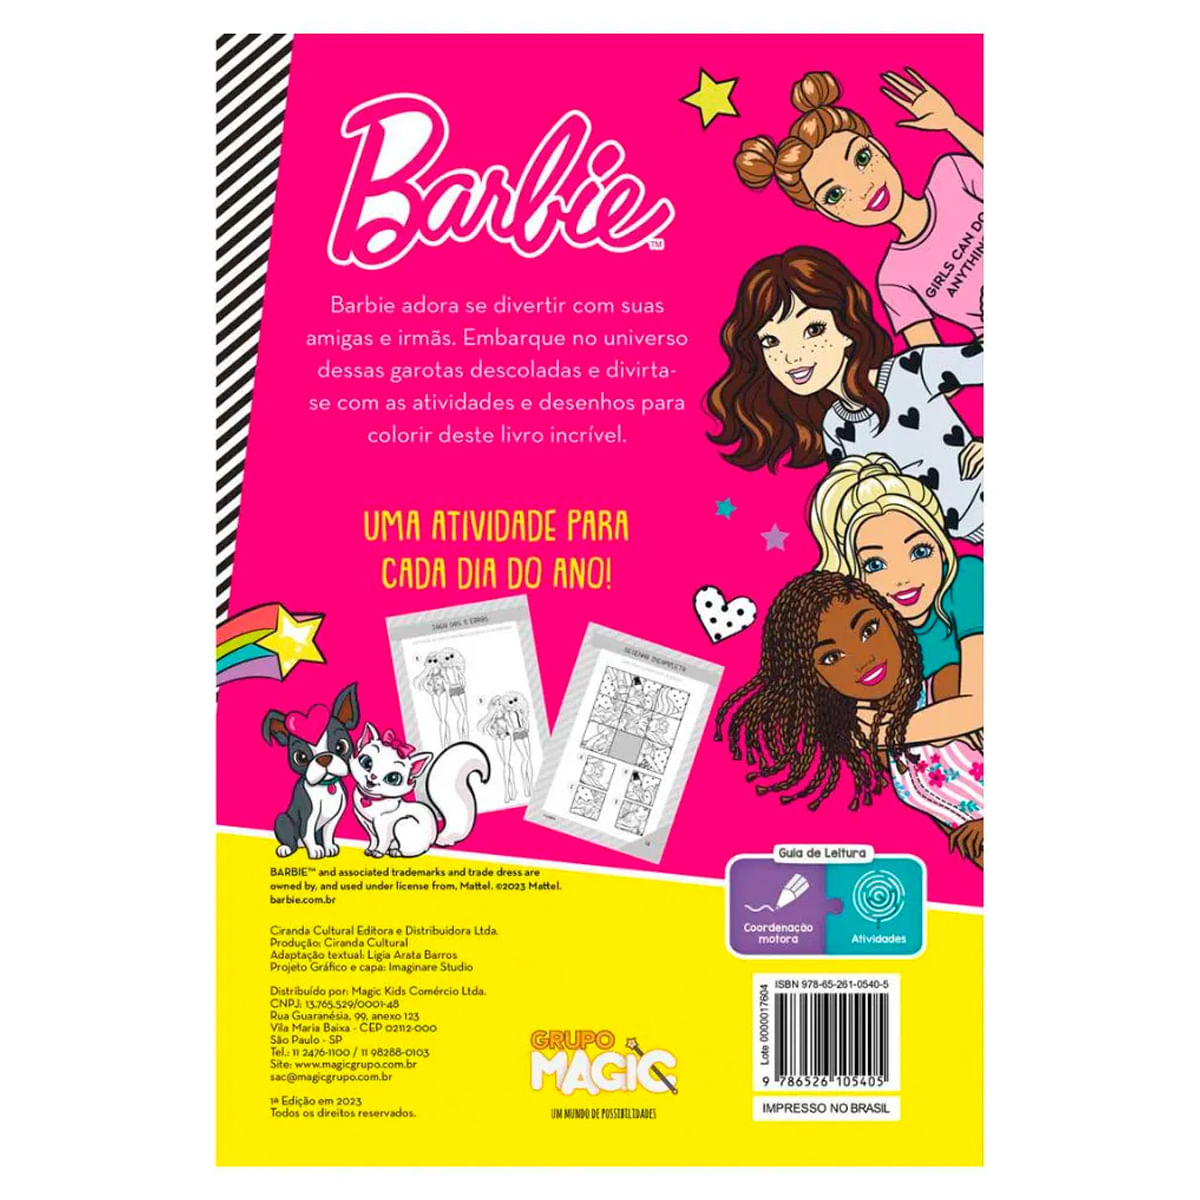 Barbie - 365 Desenhos para colorir - Aquarela Livros